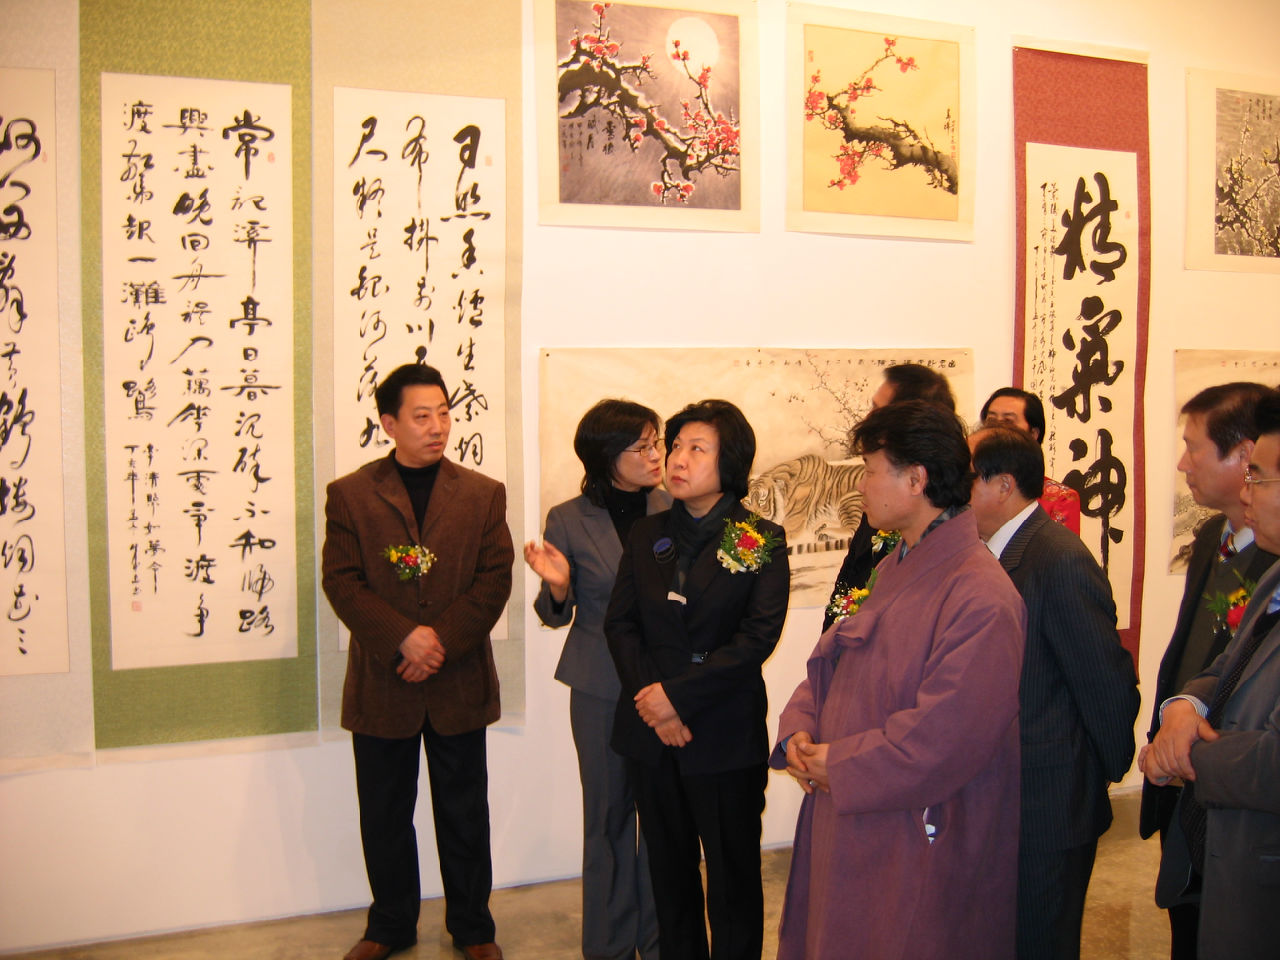 高月平先生在韓舉辦畫展中